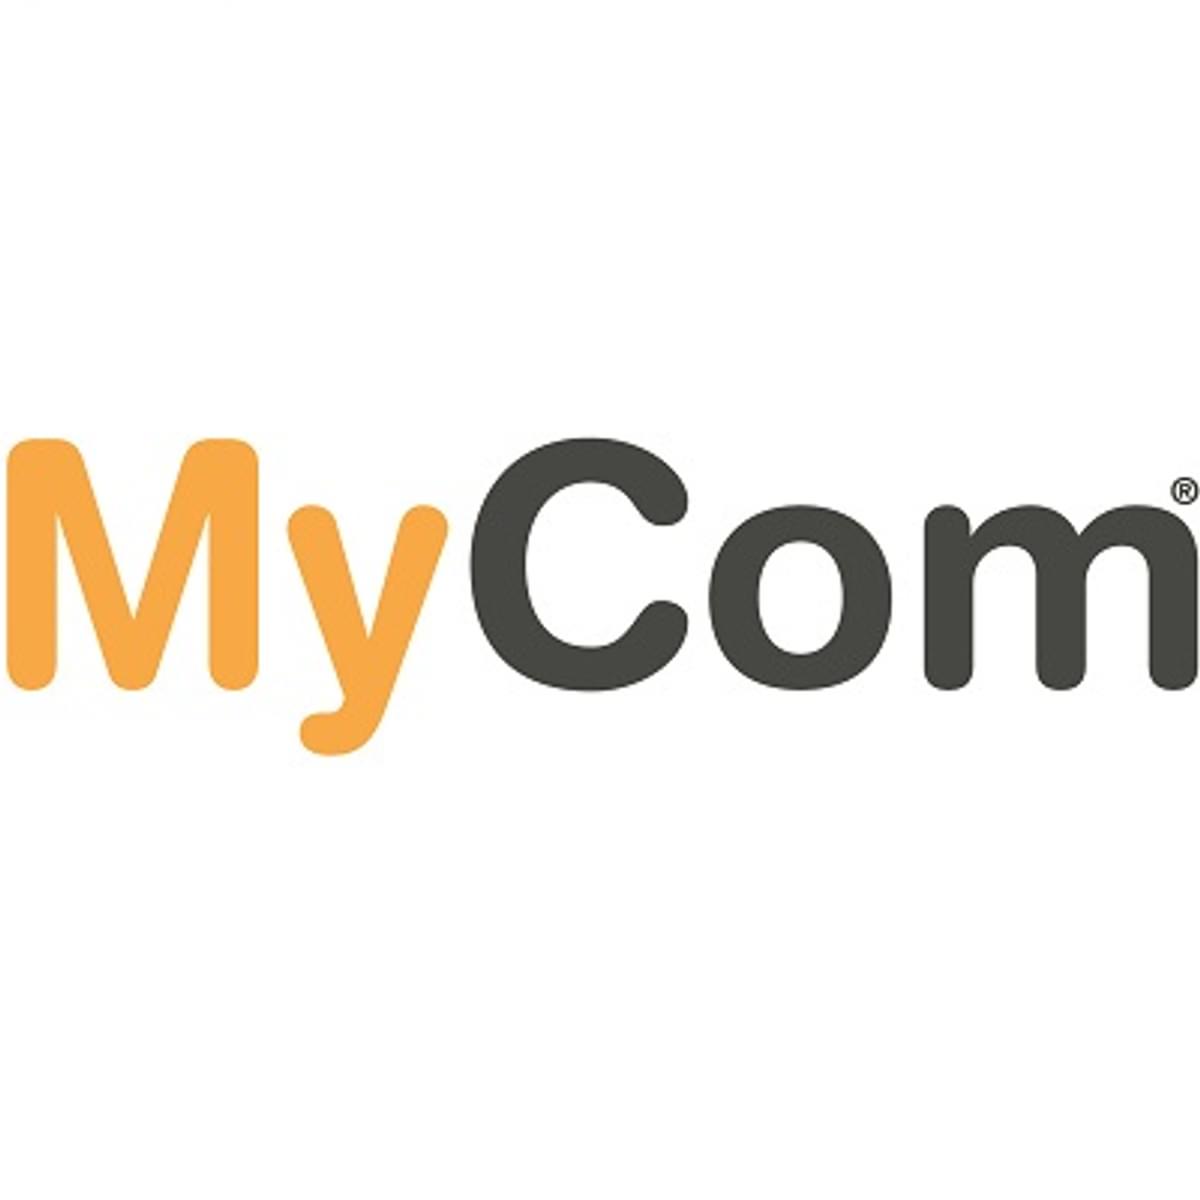 MyCom winkels gesloten na aanvraag faillissement image